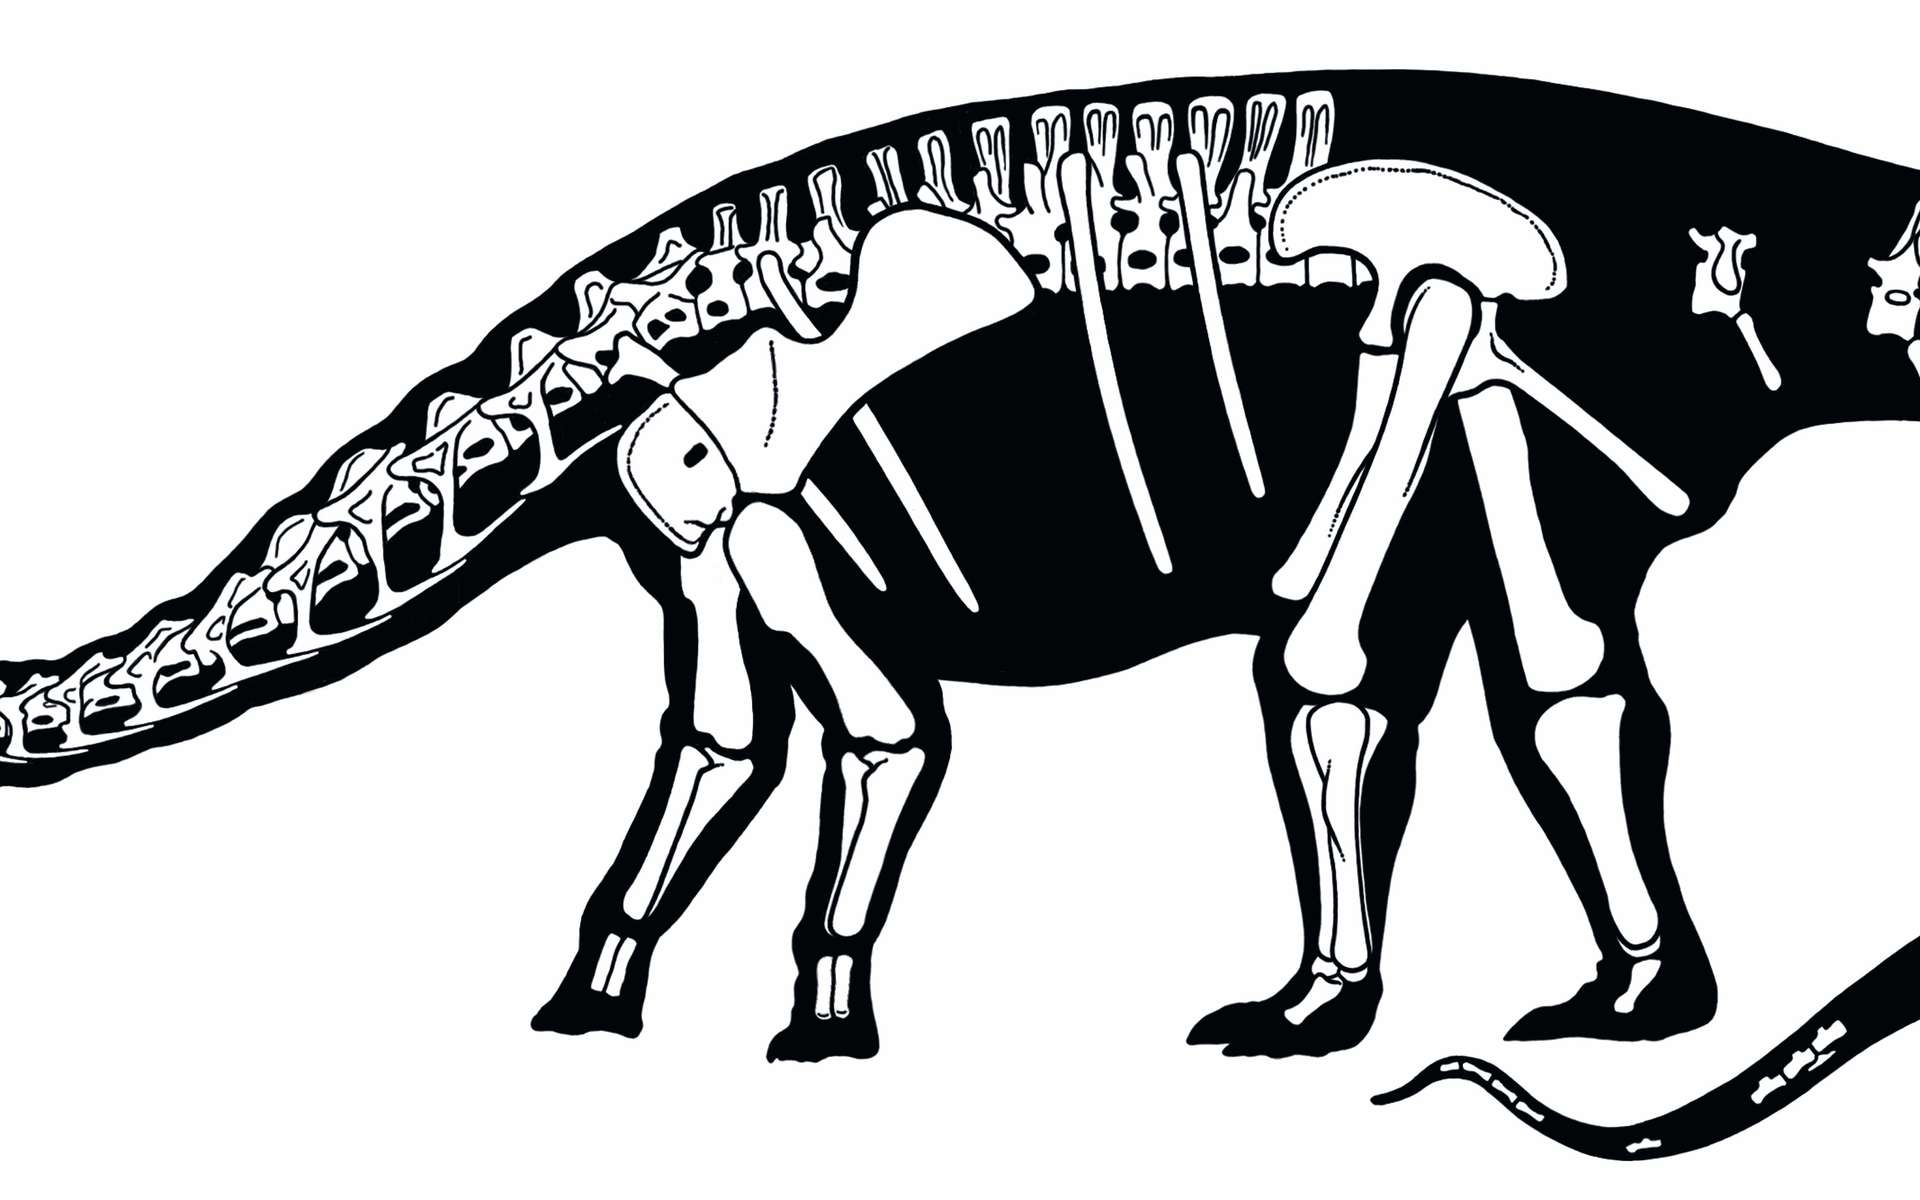 Tailles d'un homme et du Nigersaurus taqueti. Ce dernier mesurait 9 m de long. Crédit : Carol Abraczinskas, Paul Sereno